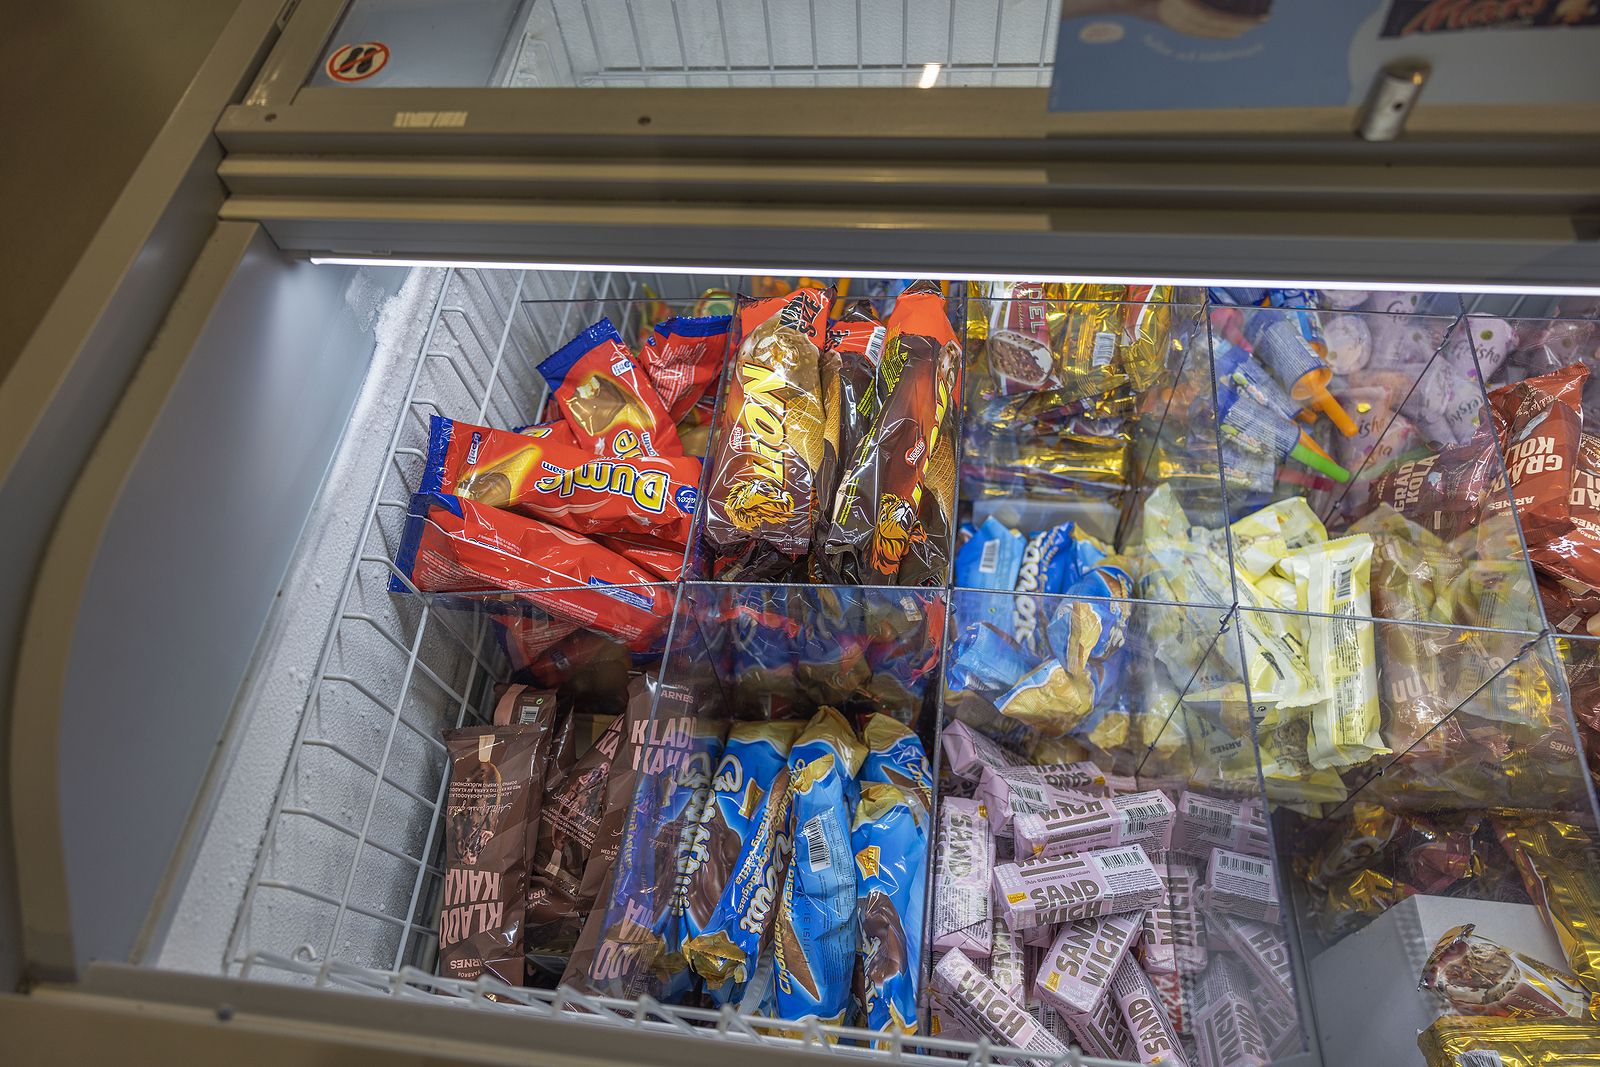 Alerta alimentaria: retiran estos helados de Mercadona, Aldi y Lidl por presentar "cuerpos extraños"